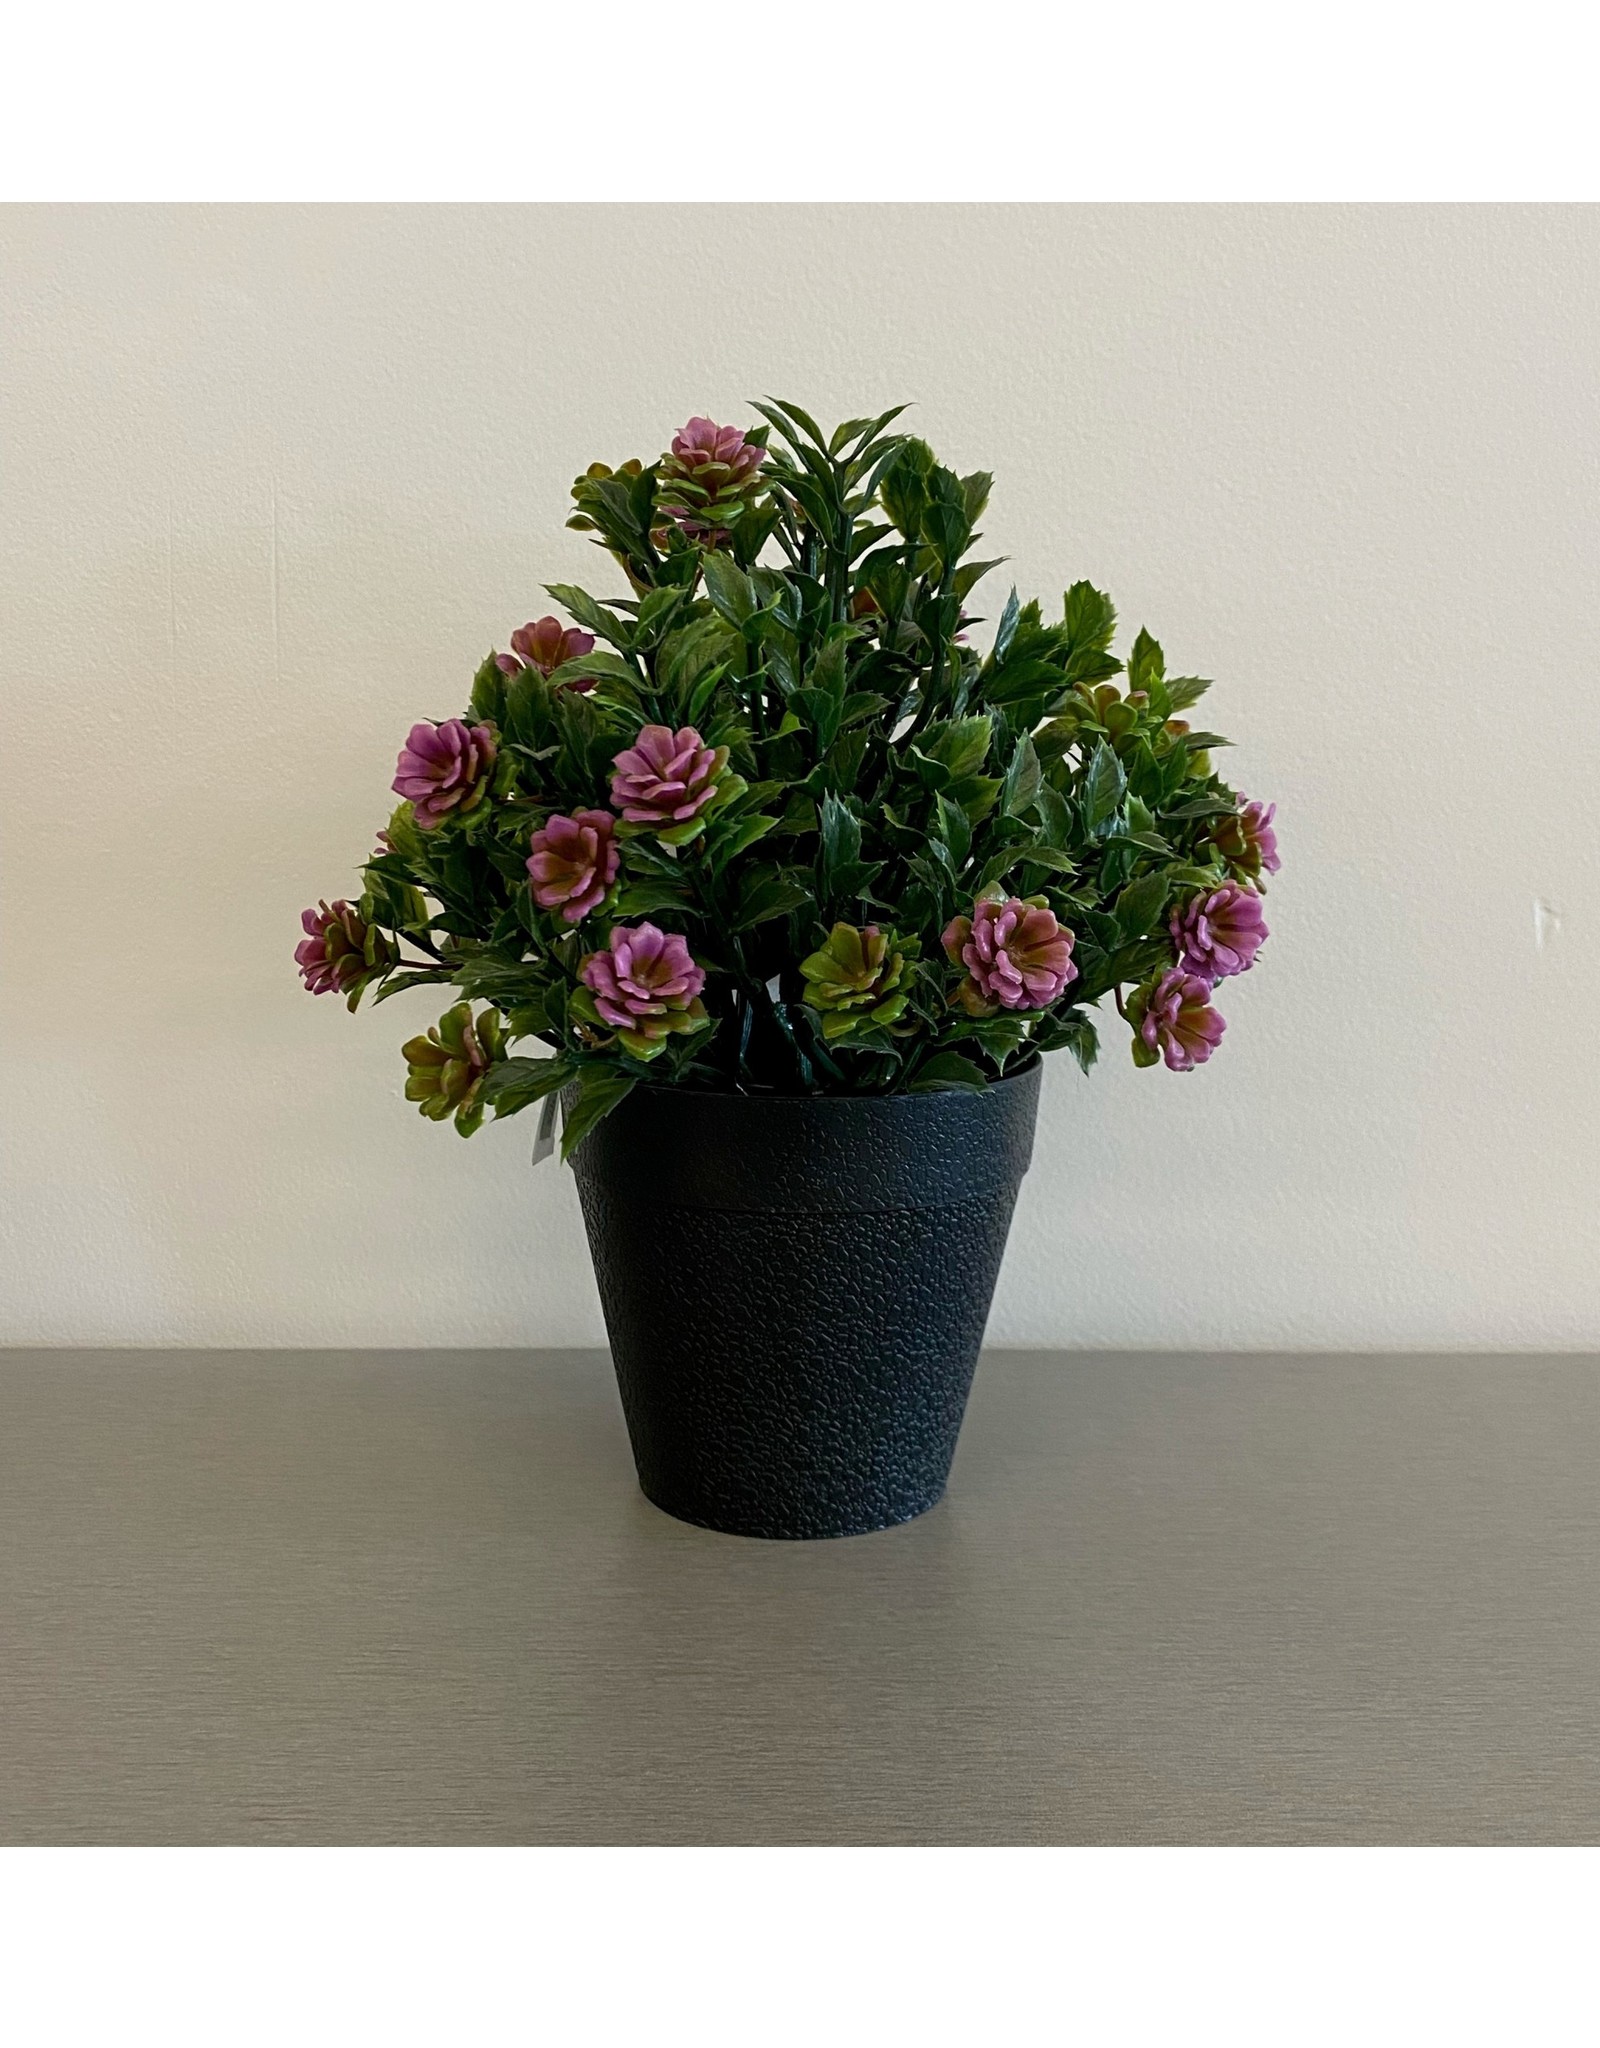 Purple Artificial Flower Bush with Black Pot